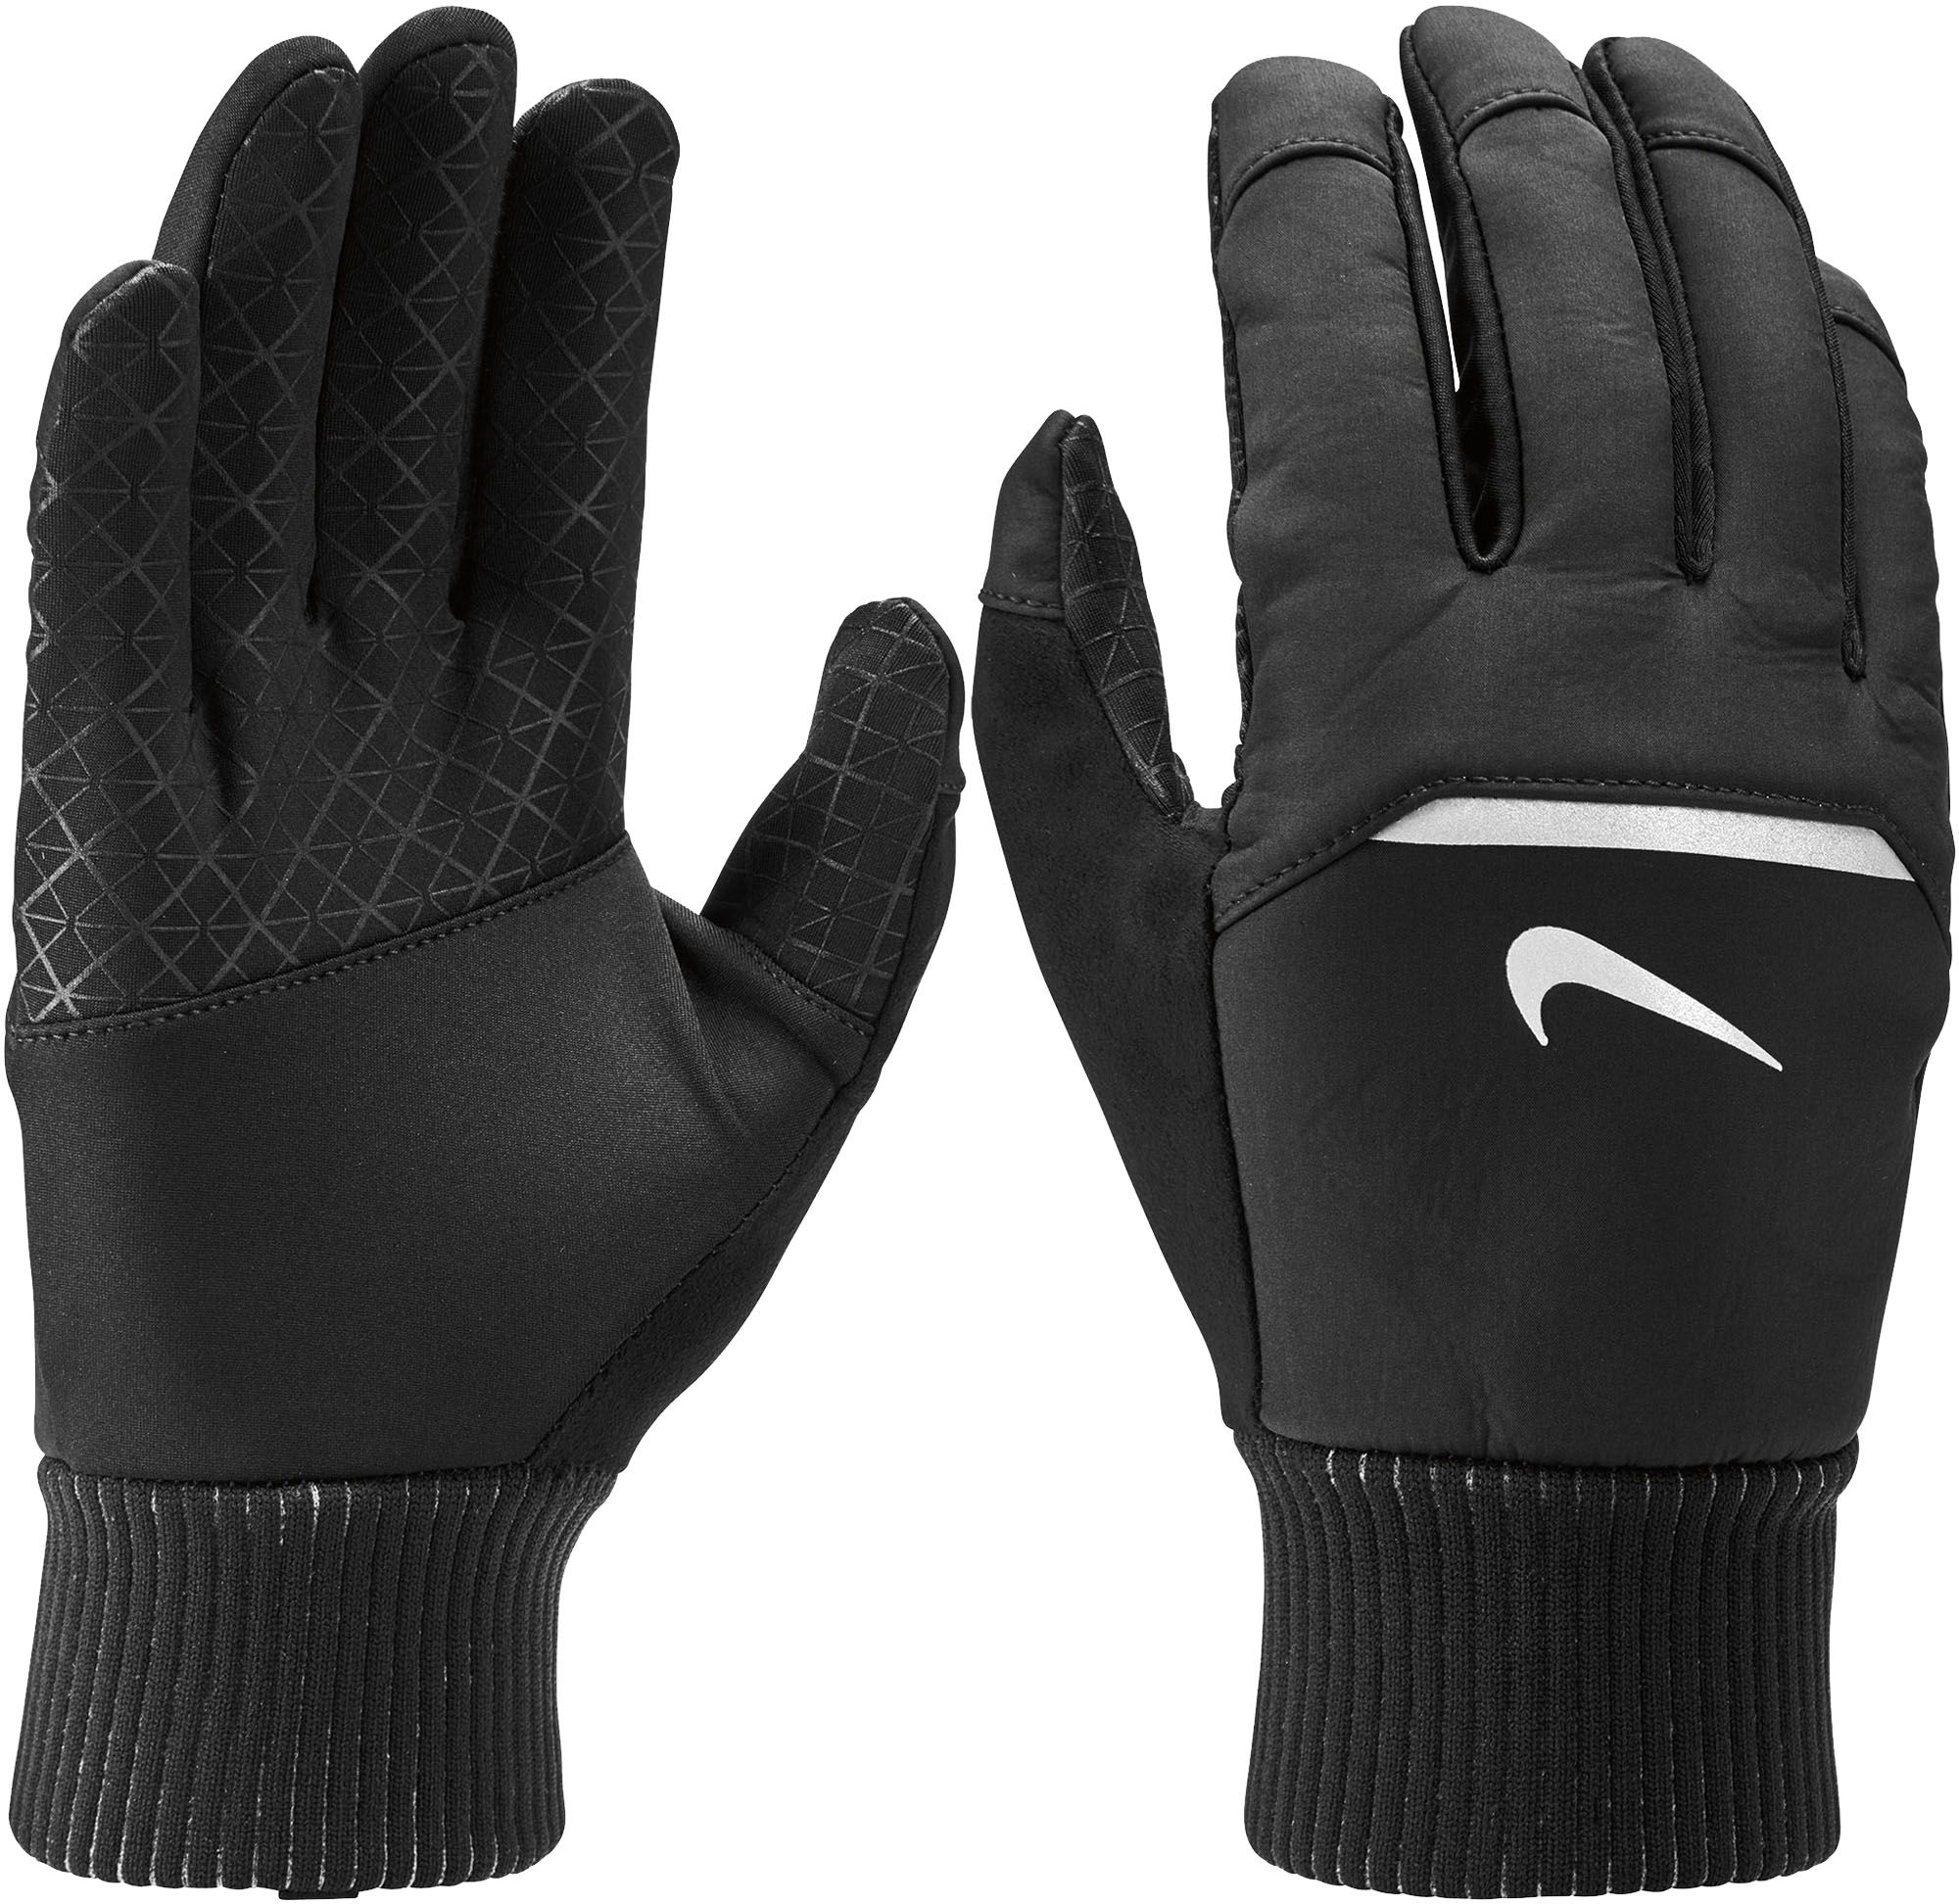 nike winter gloves 